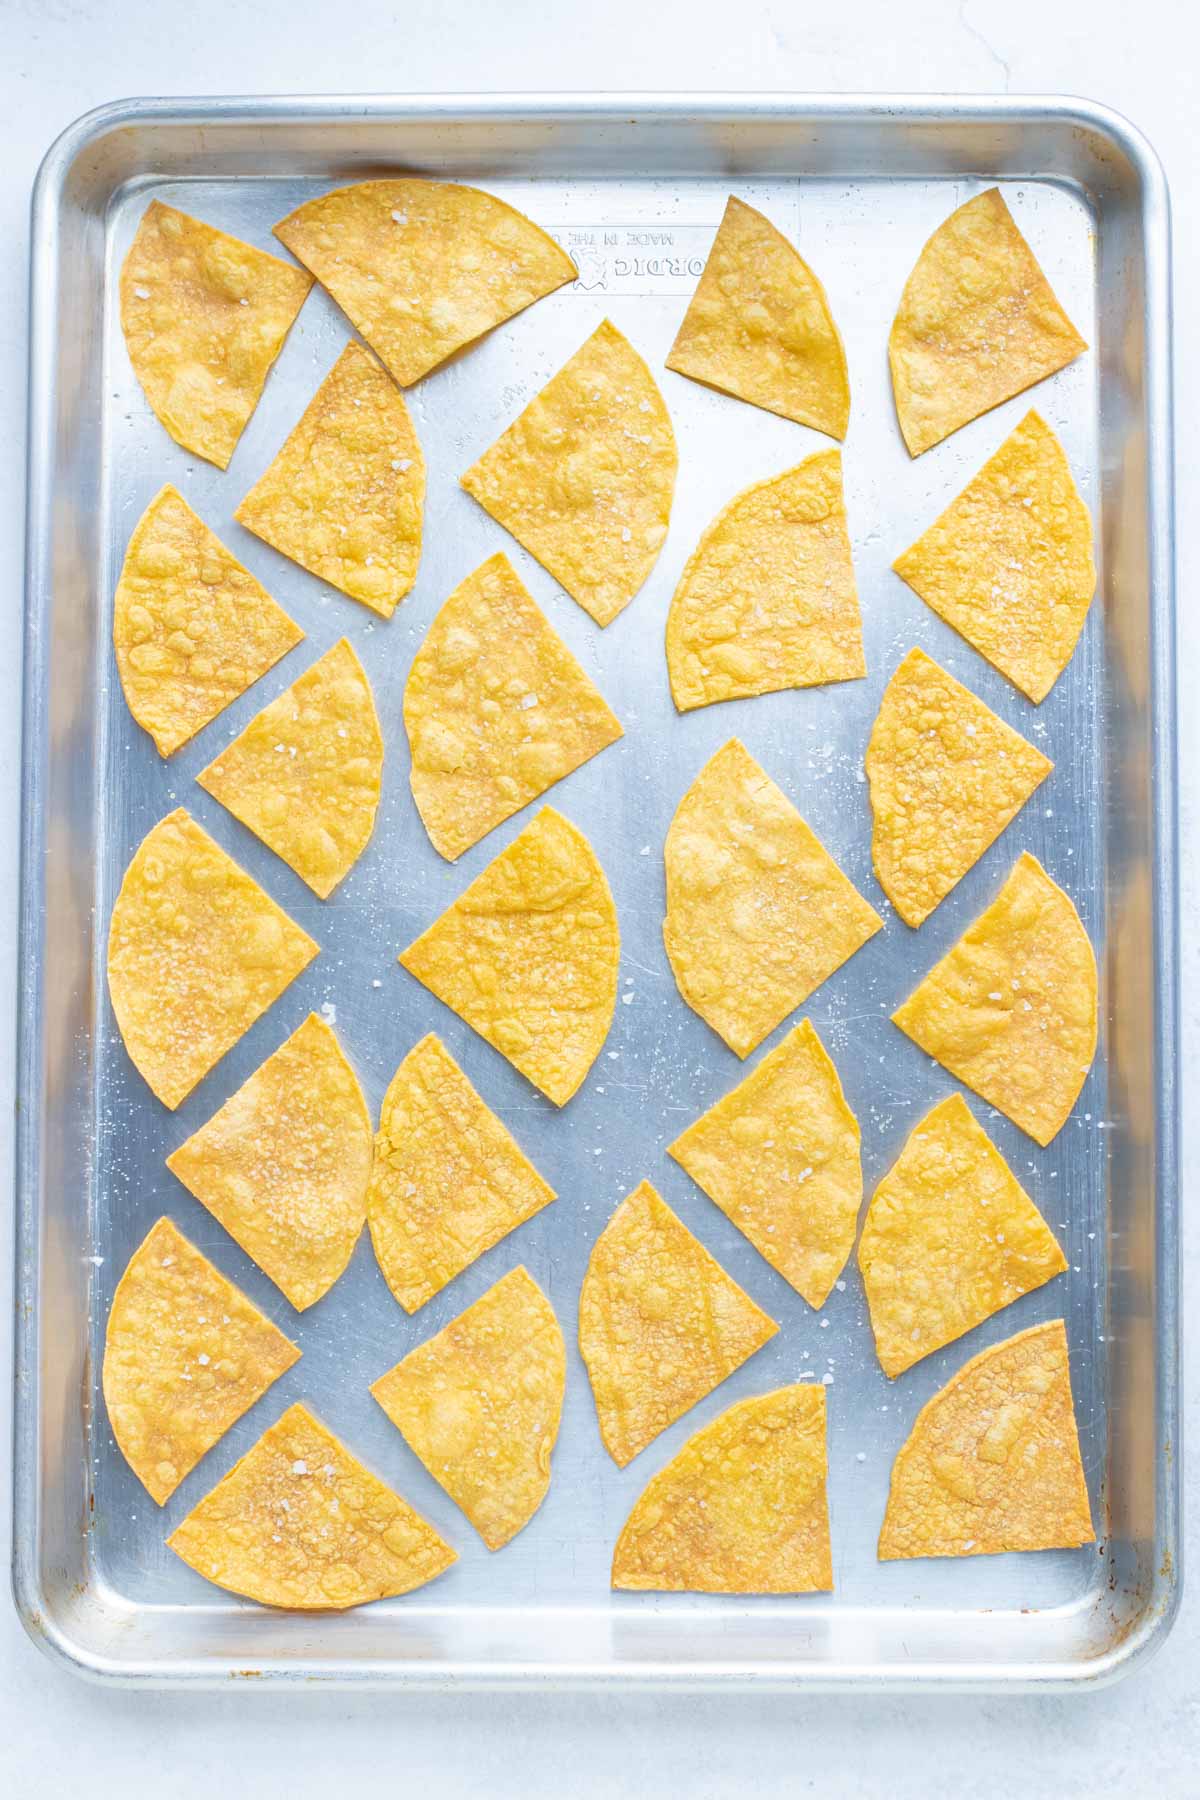 baked tortilla chips on a baking sheet.